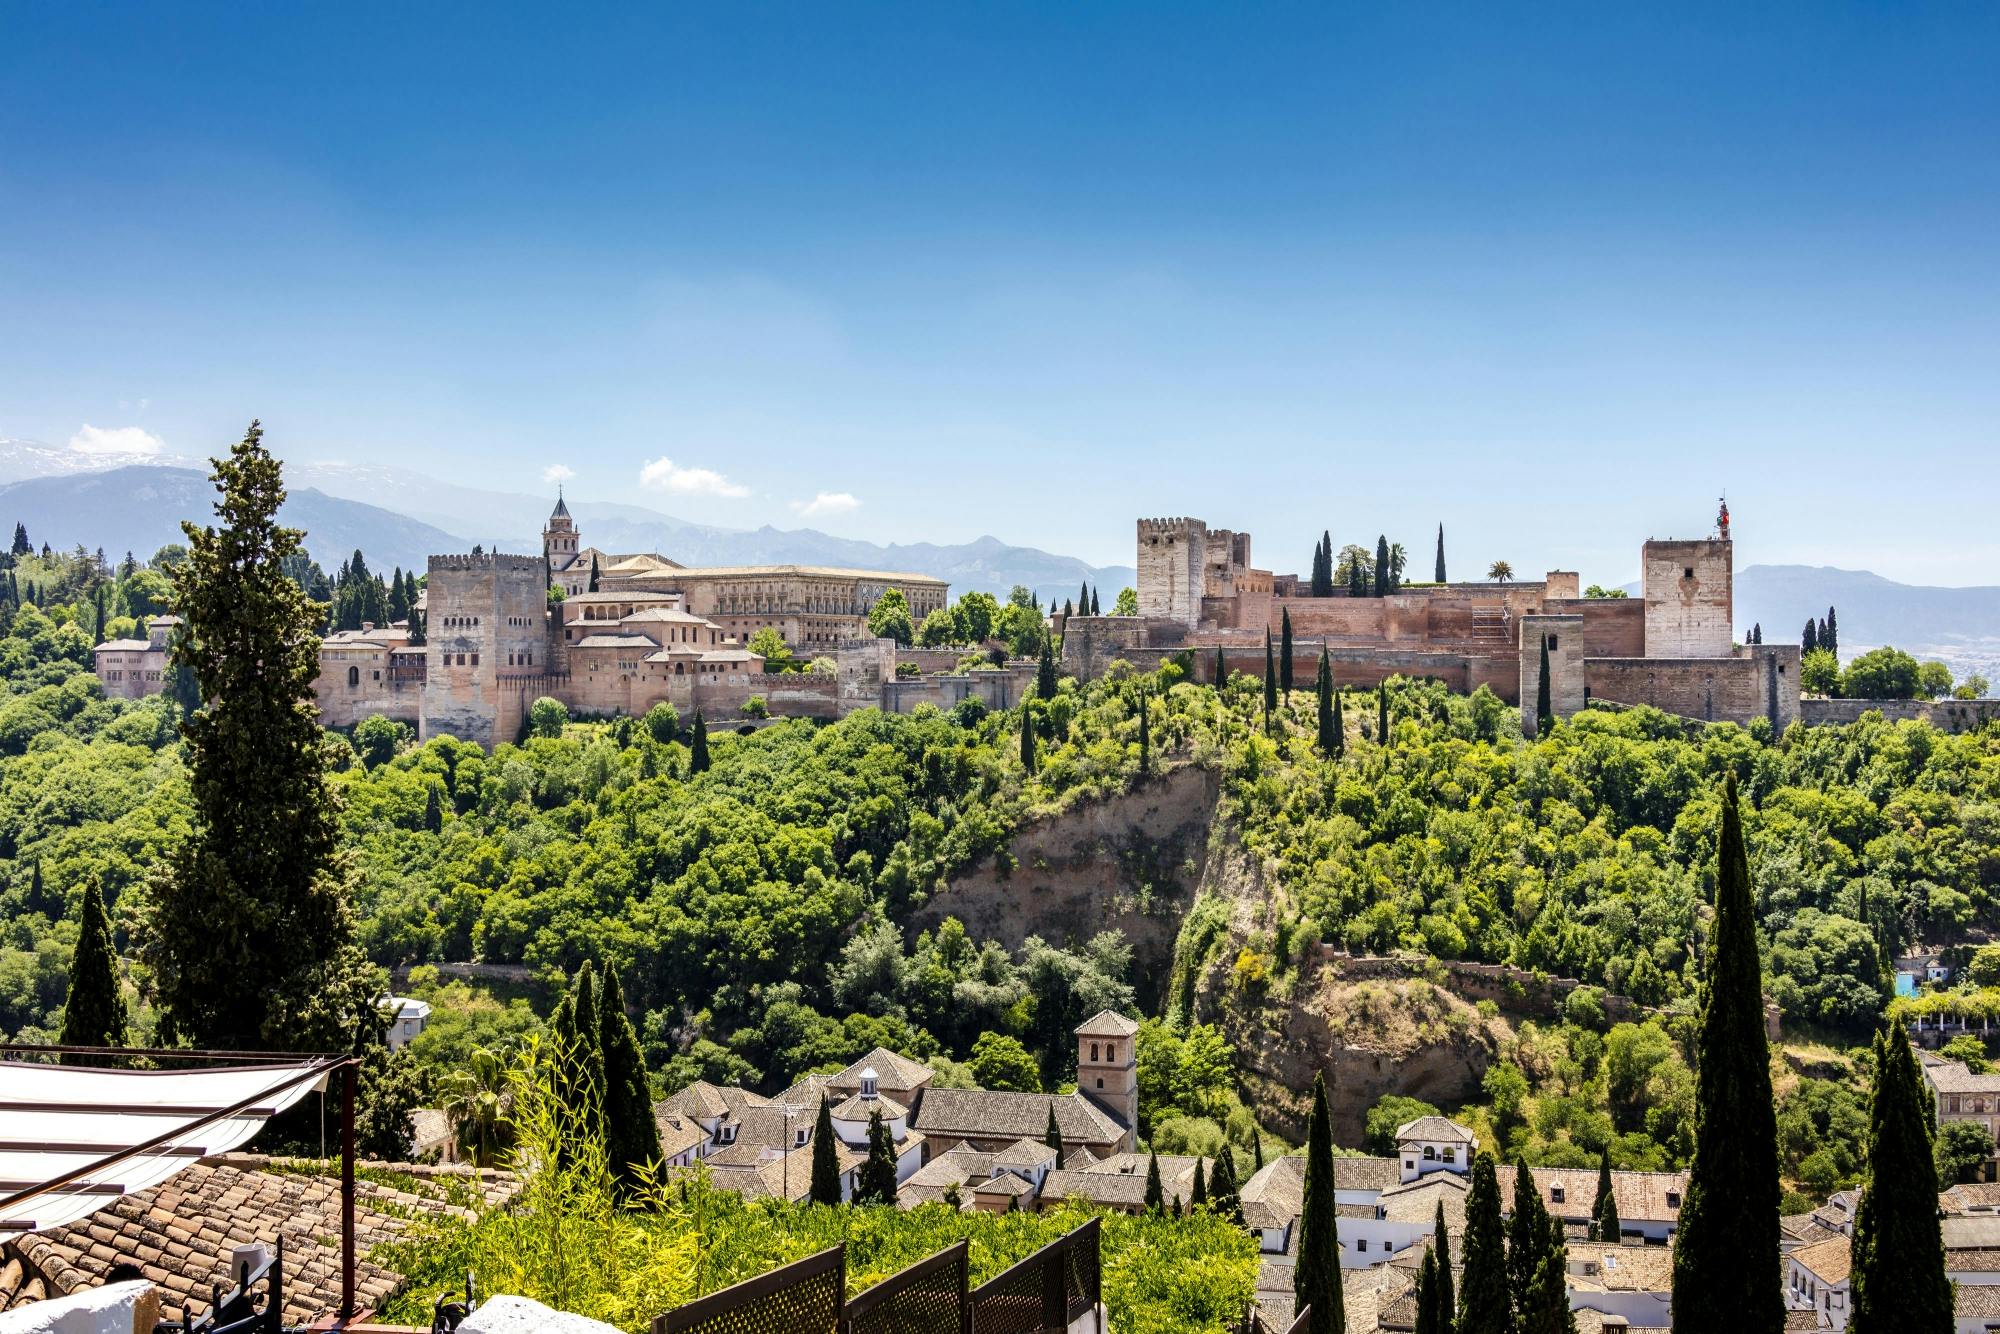 Visita guiada oficial pela Alhambra para grupos pequenos sem fila e com acesso total